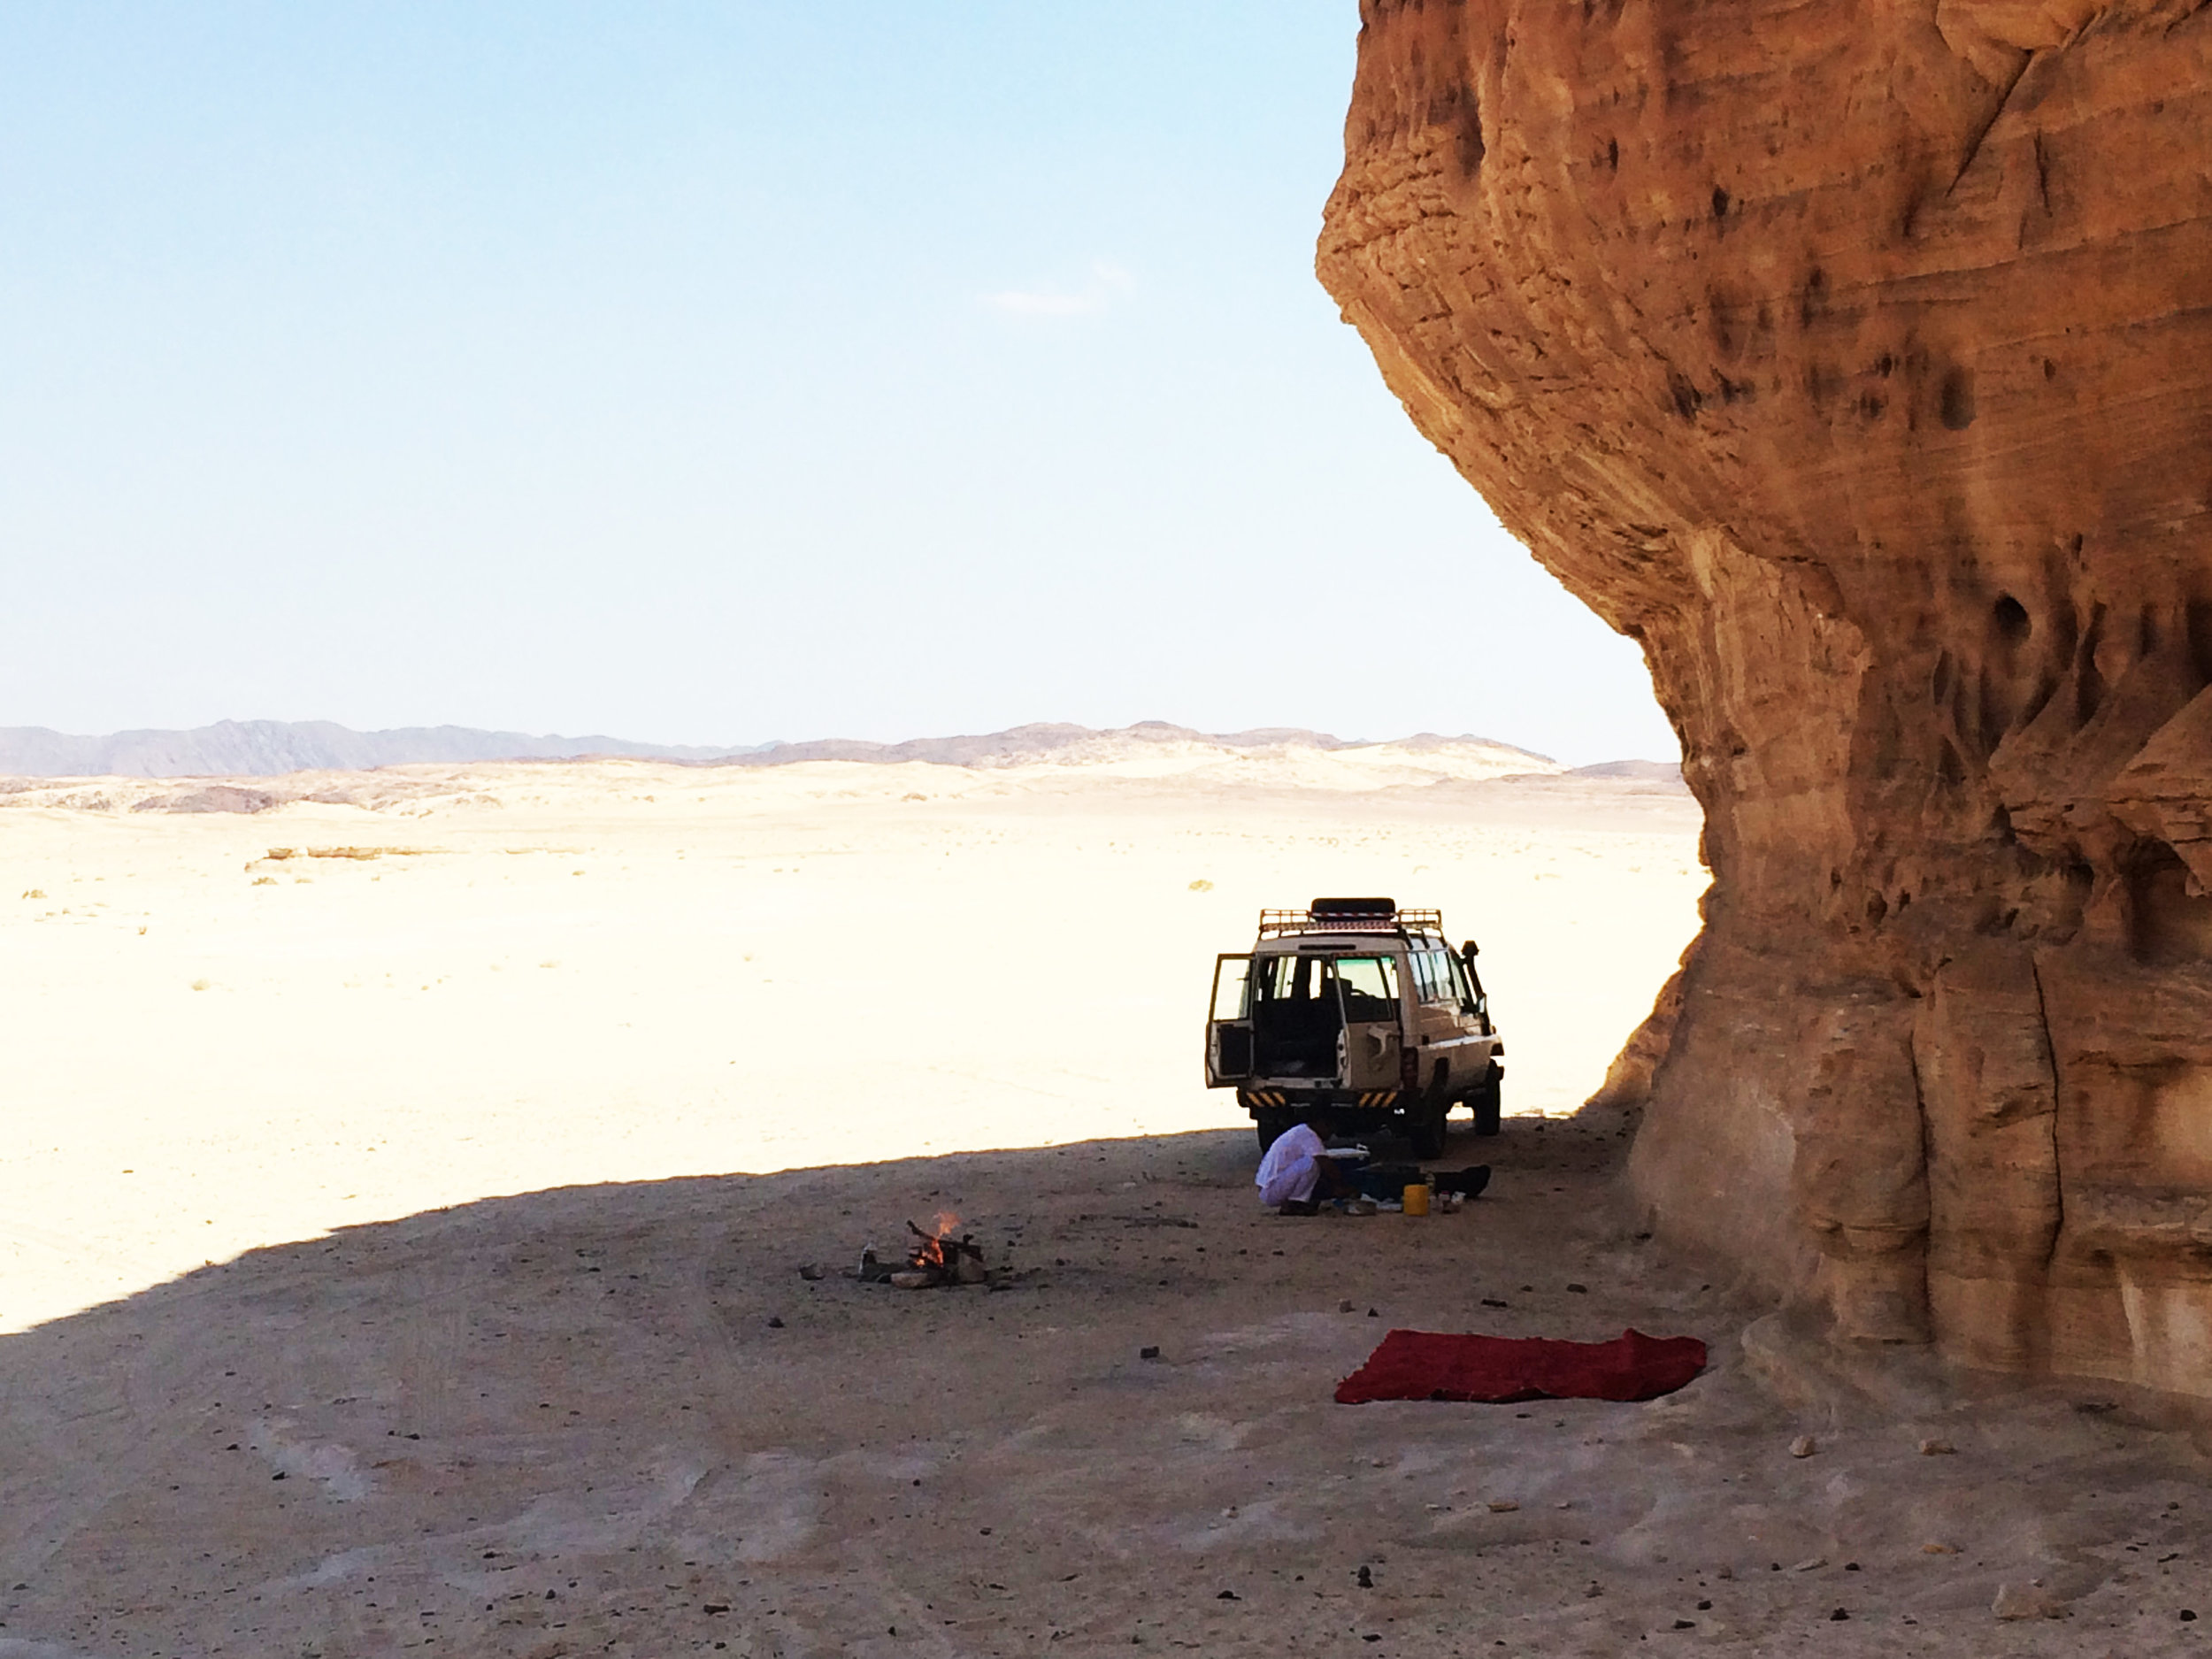 Bedouin meals in the desert